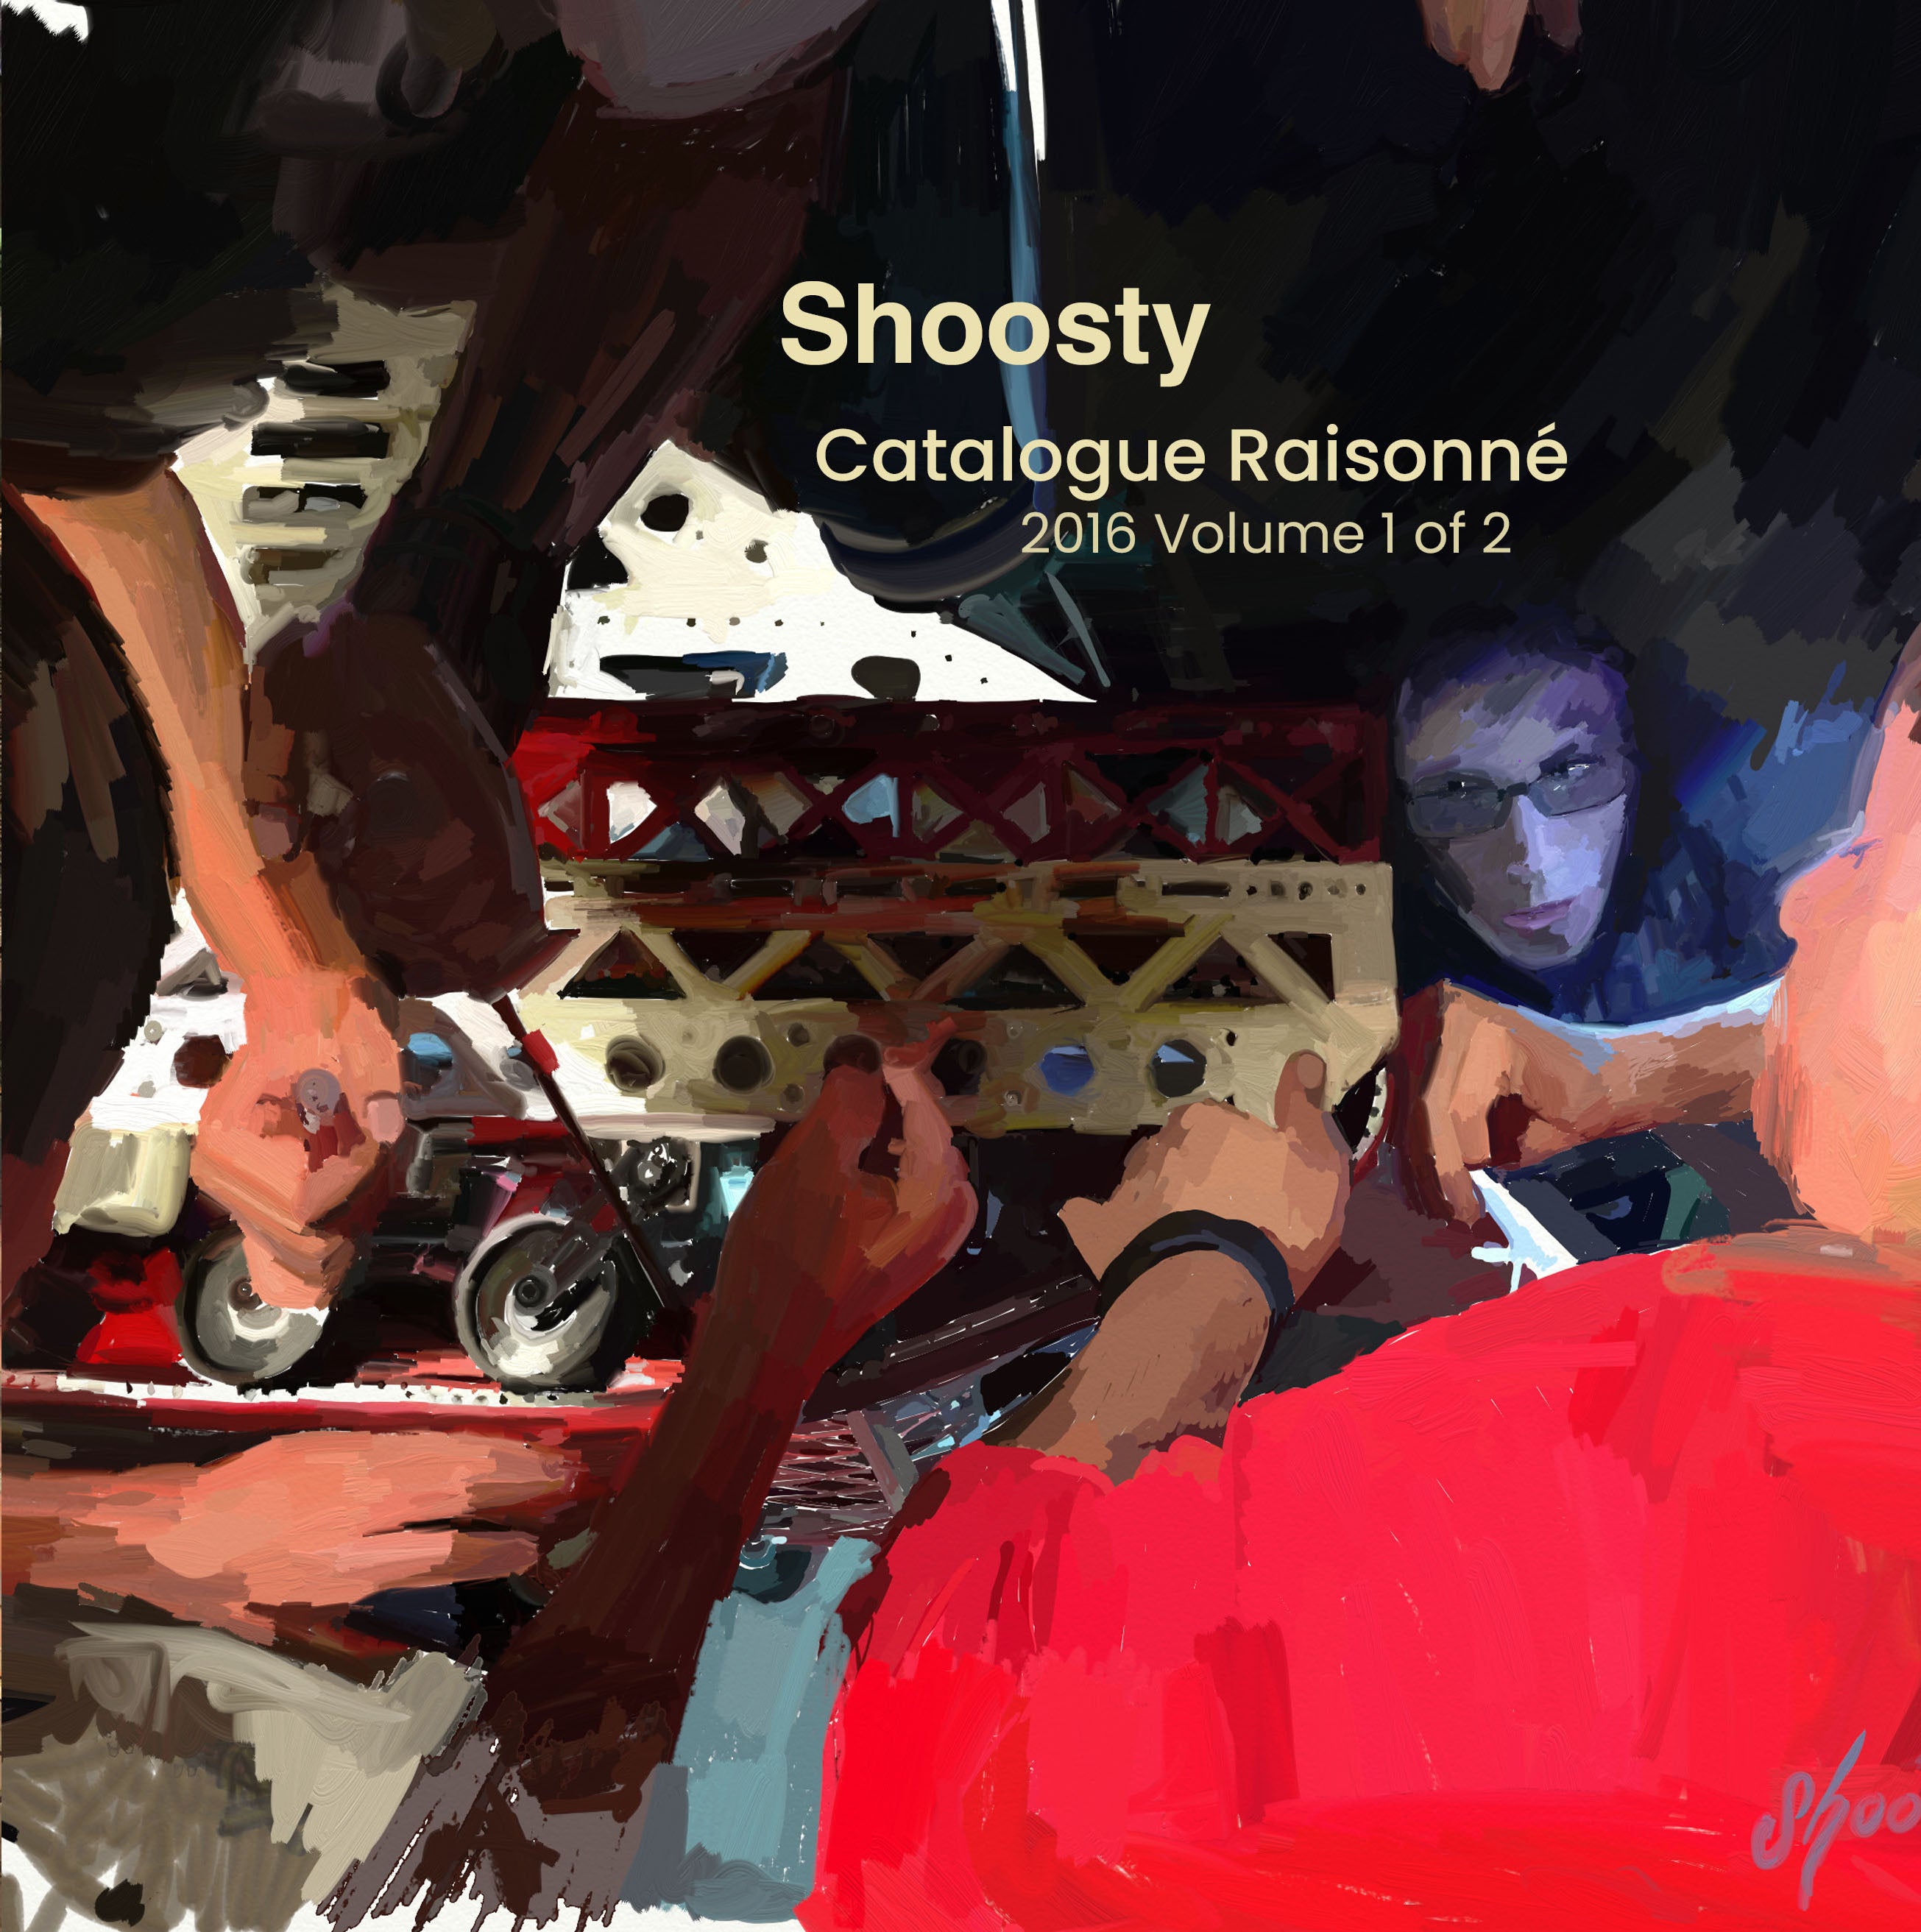 Catalog - Shoosty 2016 Volume 1